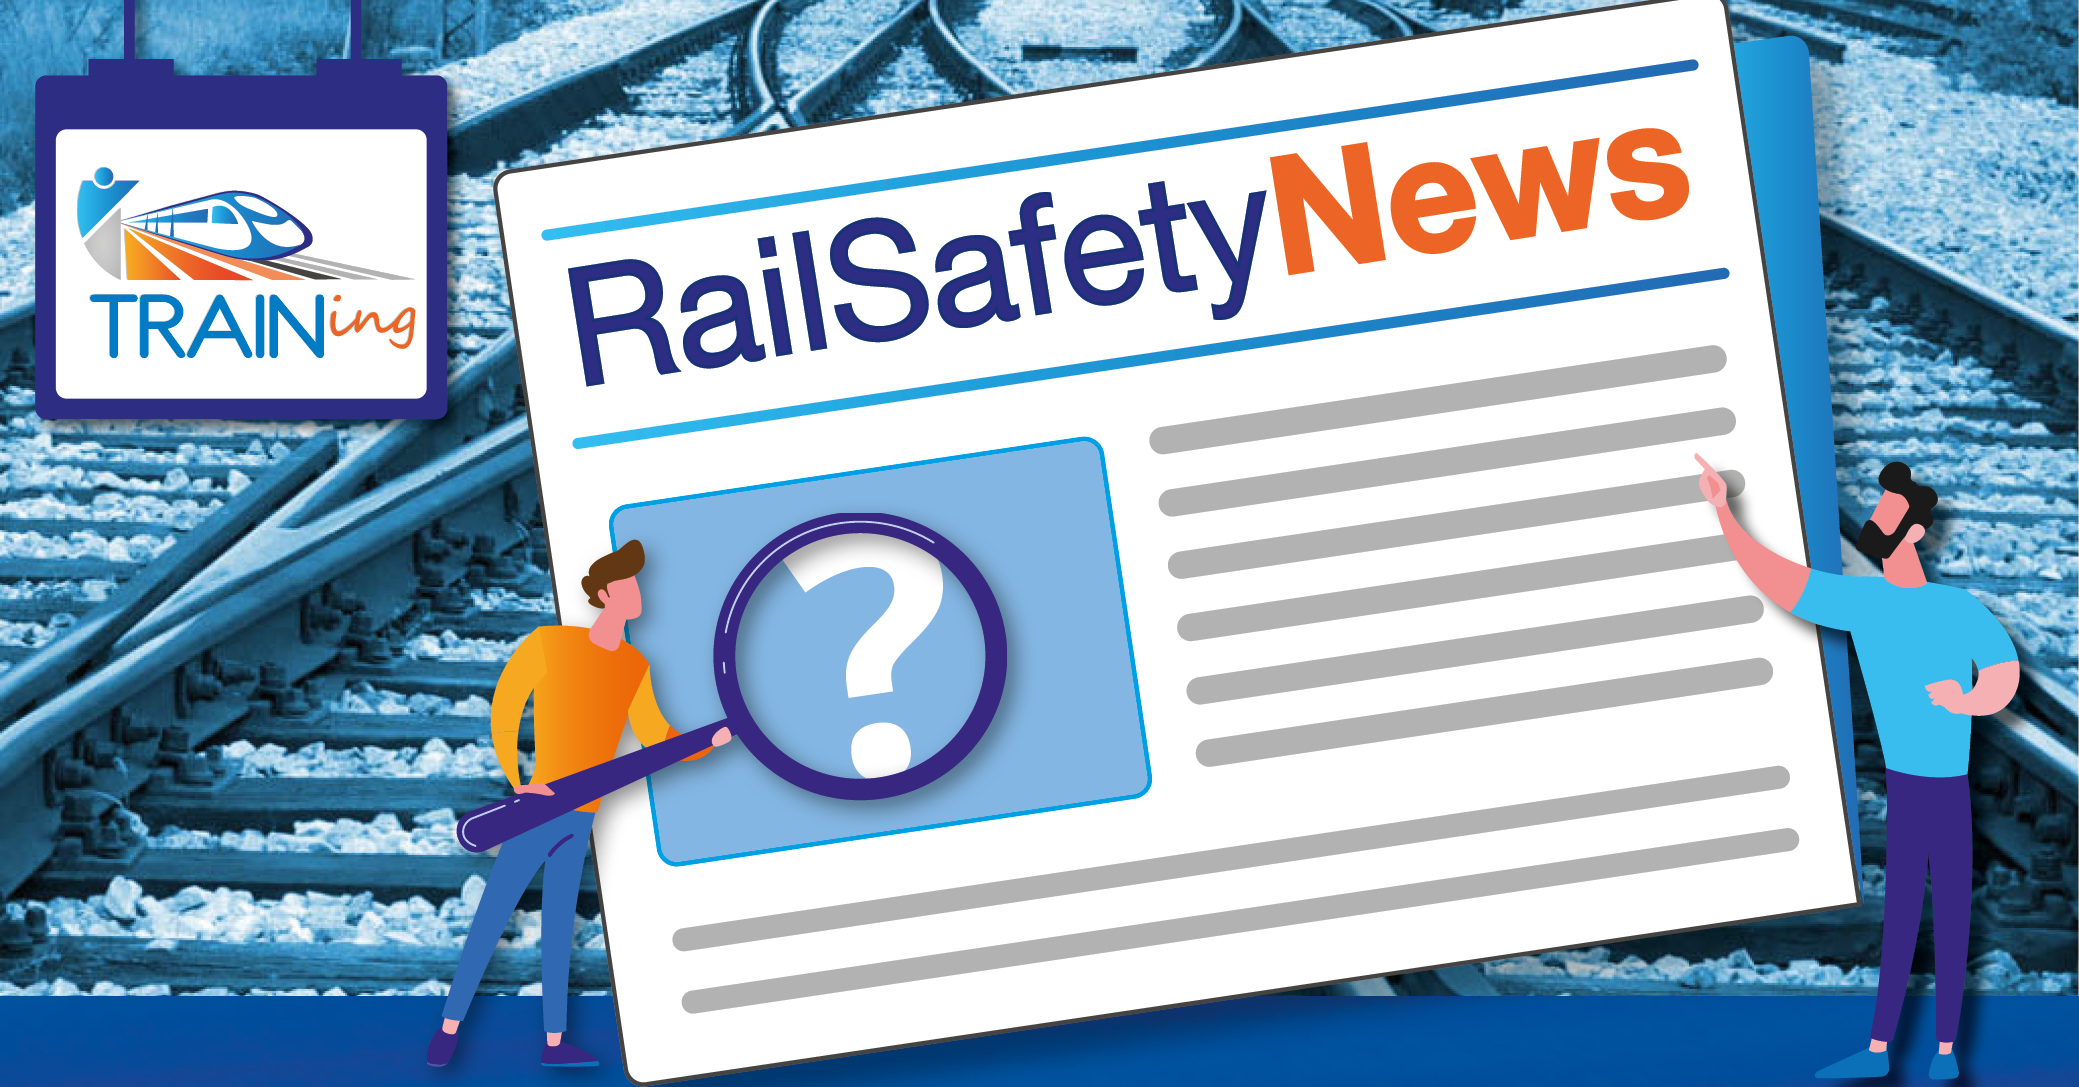 RailSafetyNews n°14